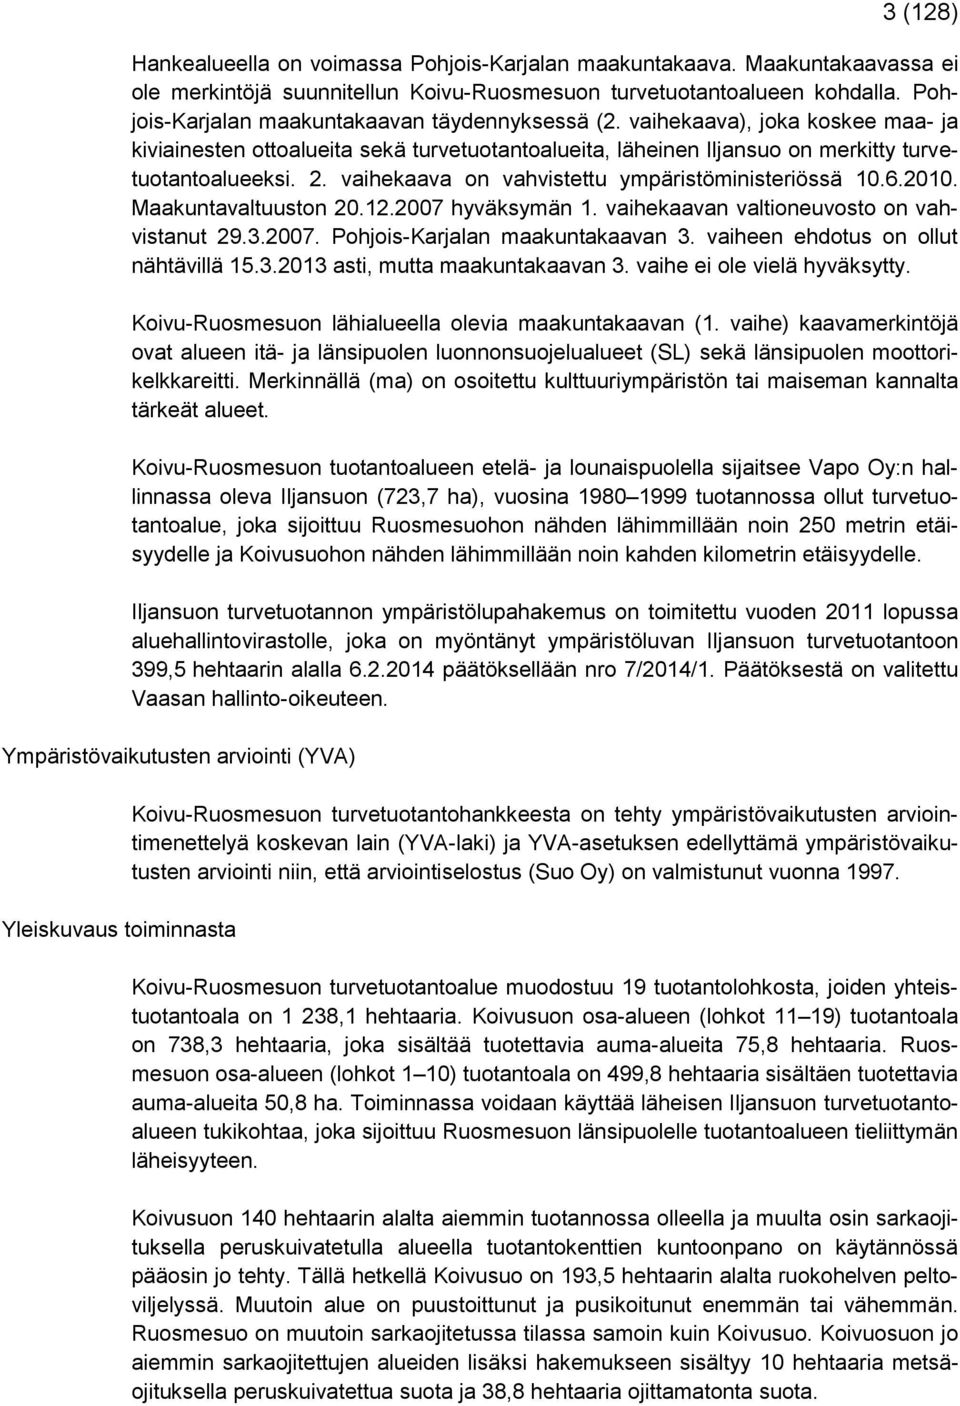 vaihekaava on vahvistettu ympäristöministeriössä 10.6.2010. Maakuntavaltuuston 20.12.2007 hyväksymän 1. vaihekaavan valtioneuvosto on vahvistanut 29.3.2007. Pohjois-Karjalan maakuntakaavan 3.